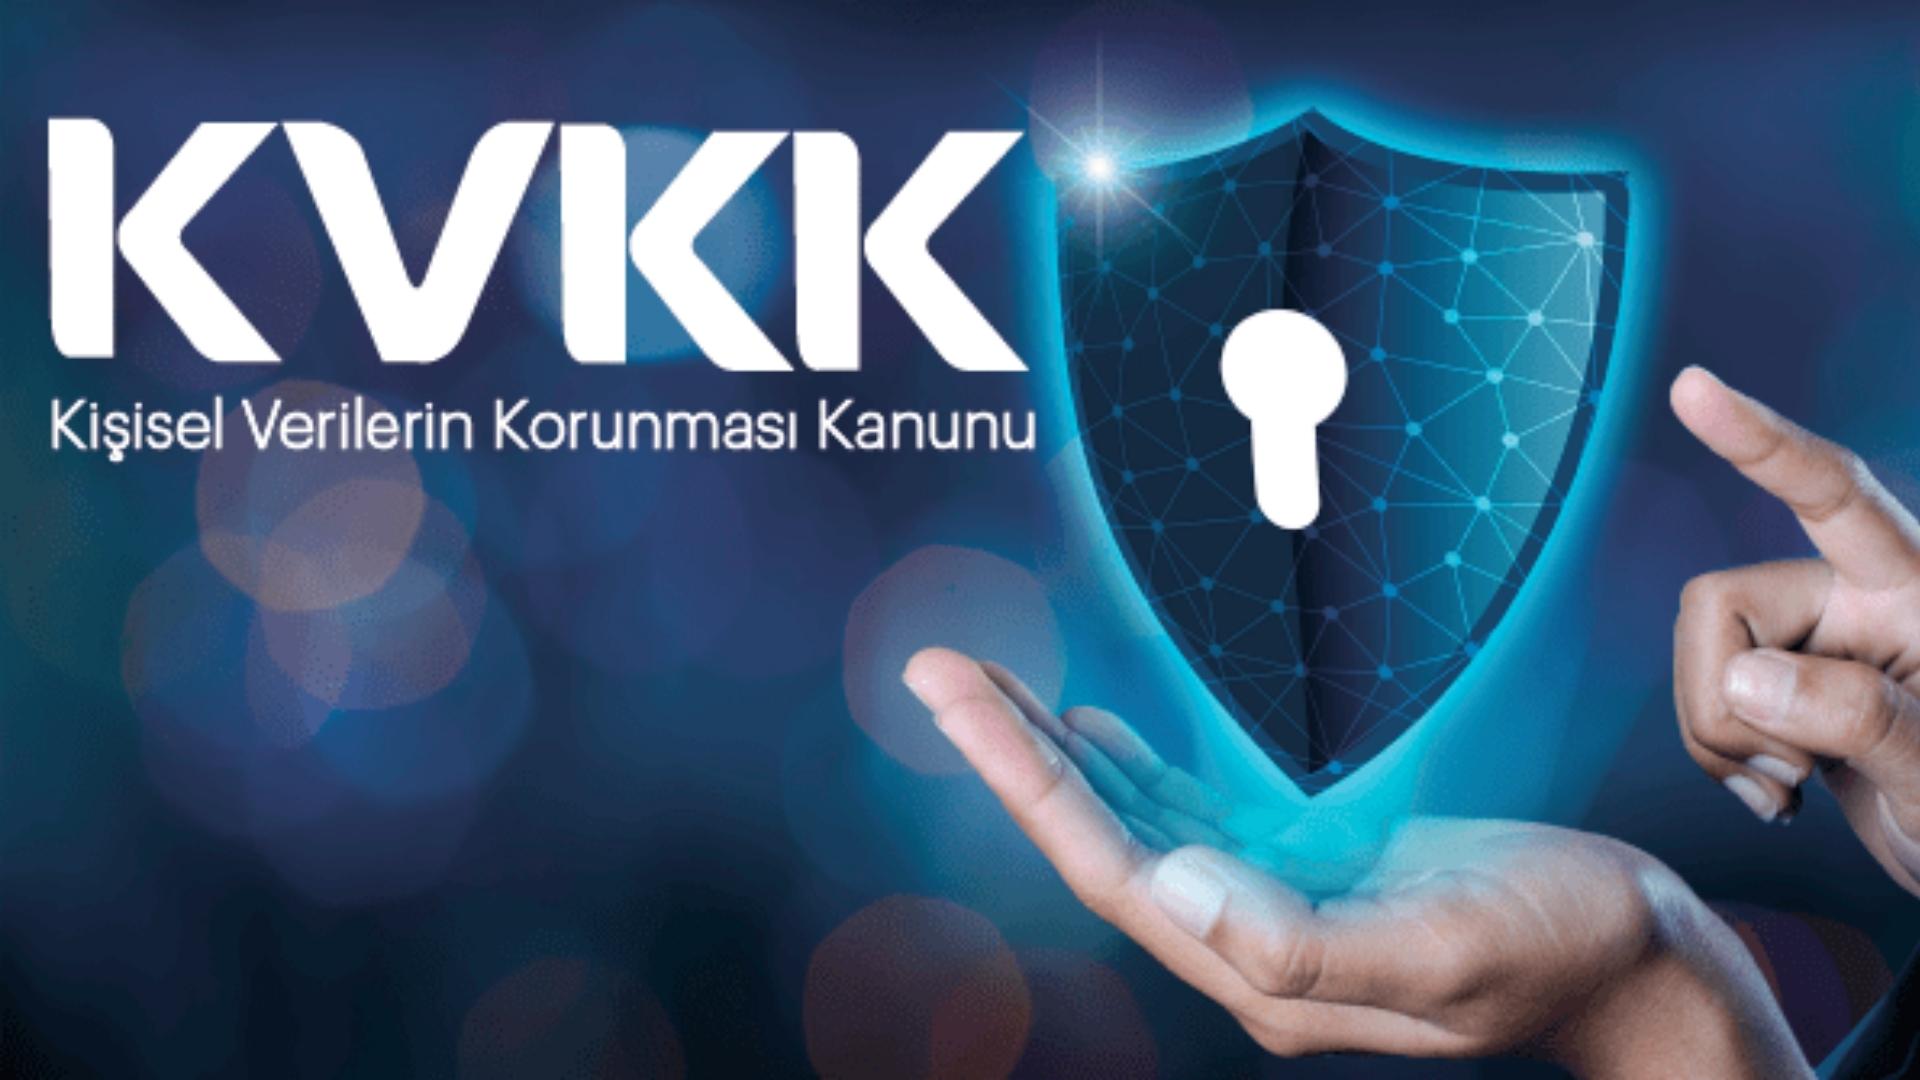 Kişisel Verilerin Korunması Kanunu (KVKK)